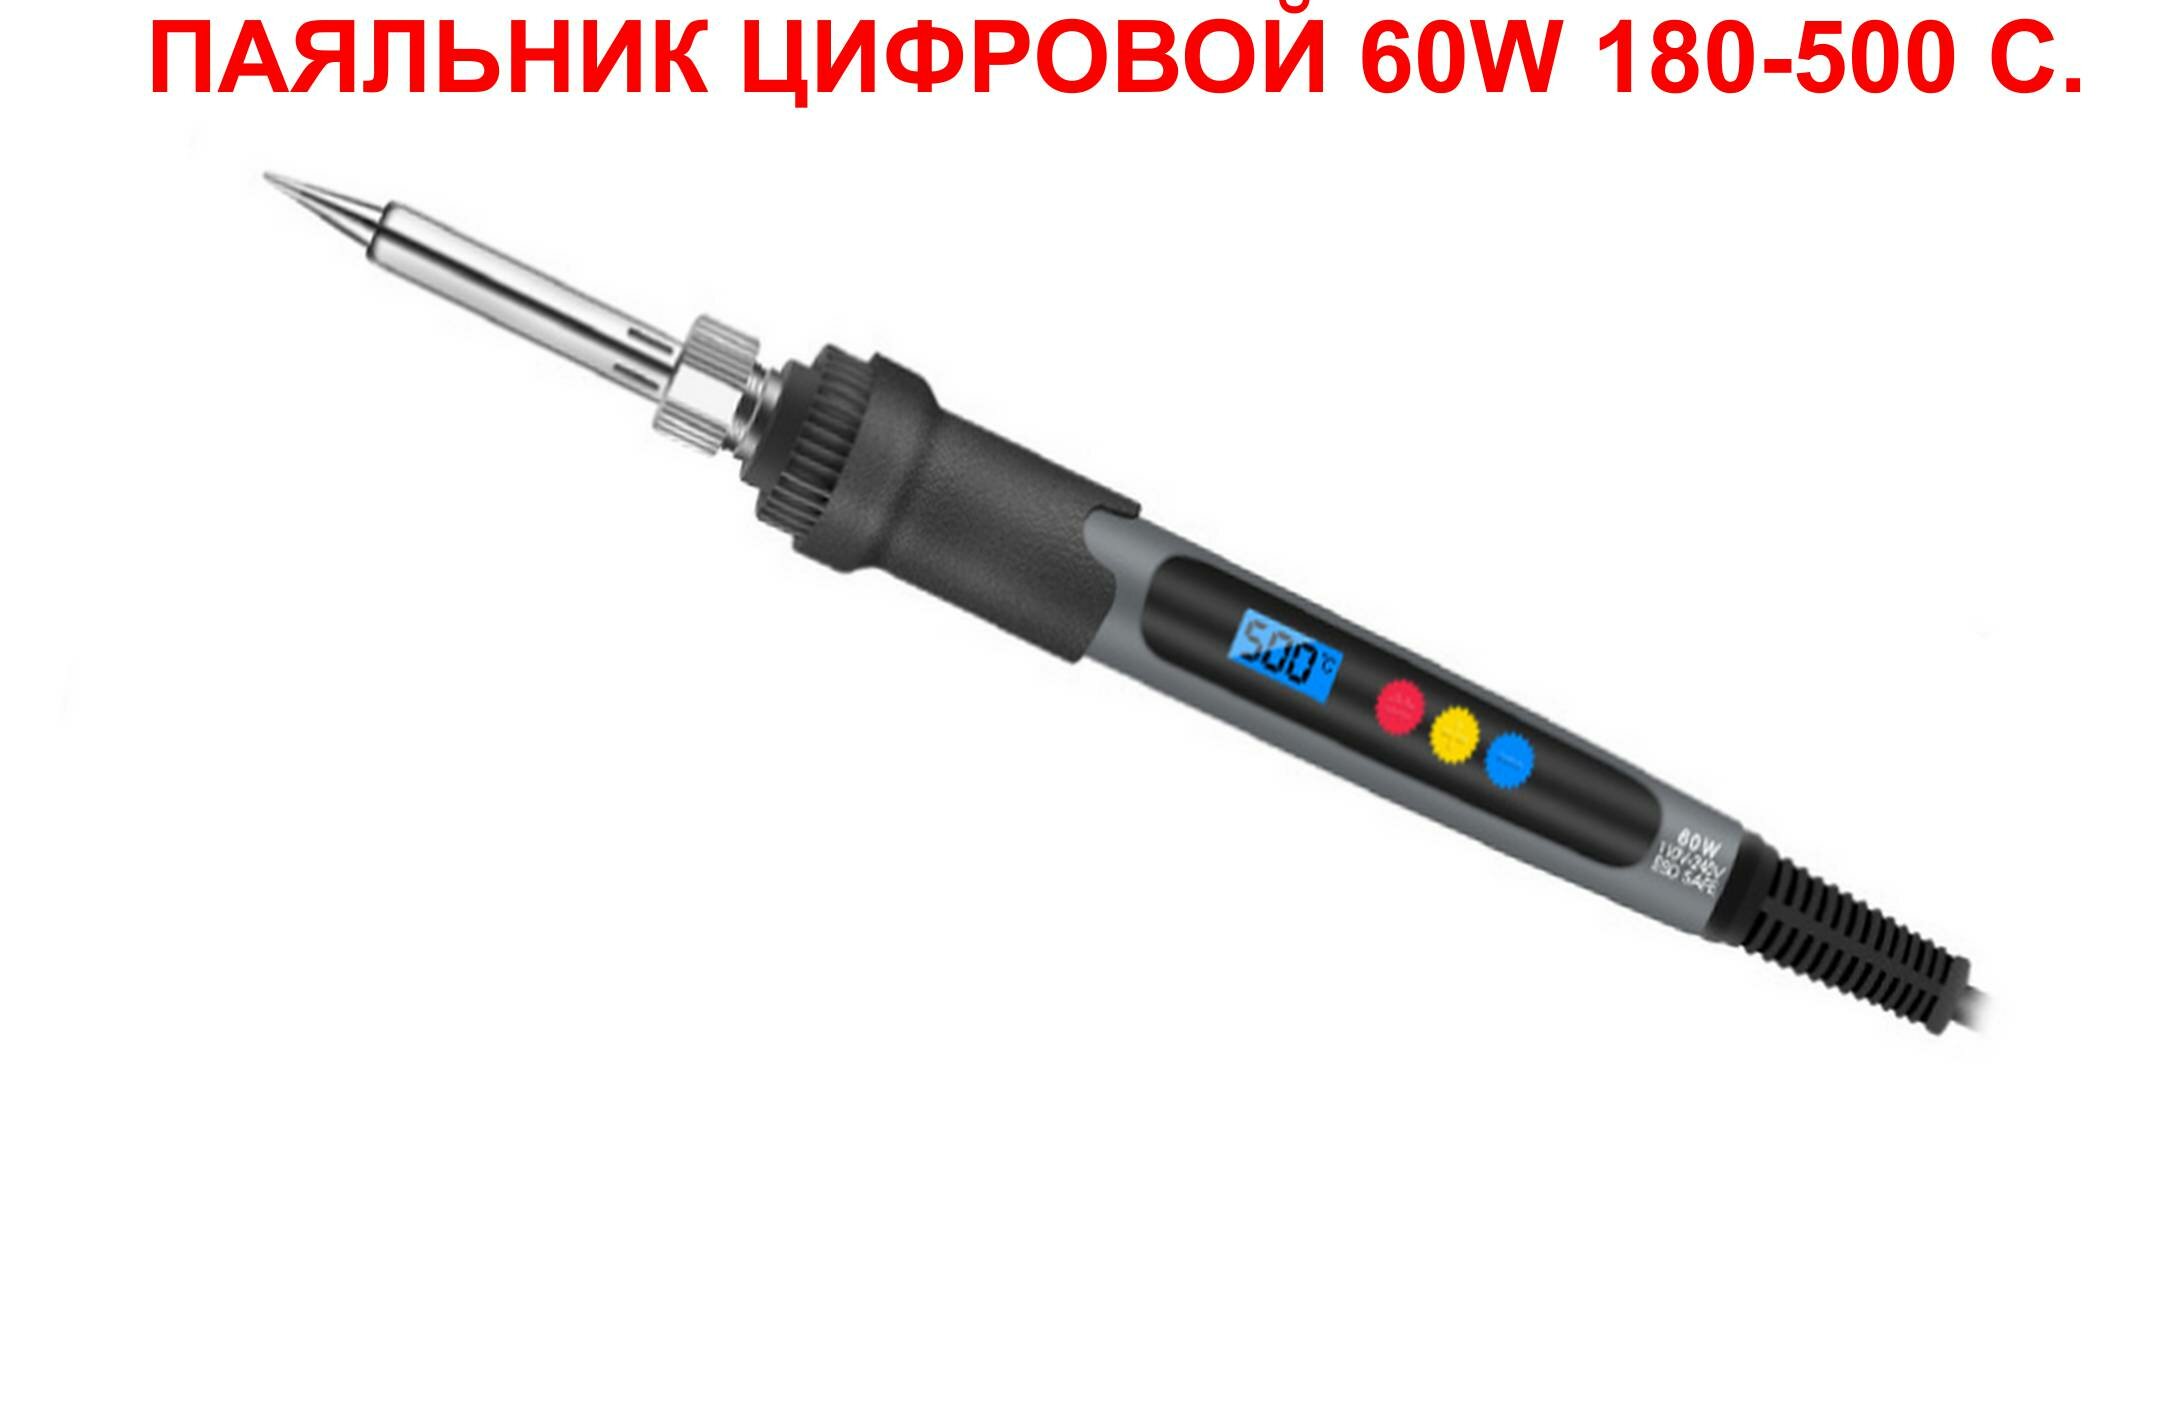 Набор №2-1 мультиметр DT-830D цифровой паяльник подставка отвертка индикаторная нож металл припой набор жал-5 оловоотсос пинцеты